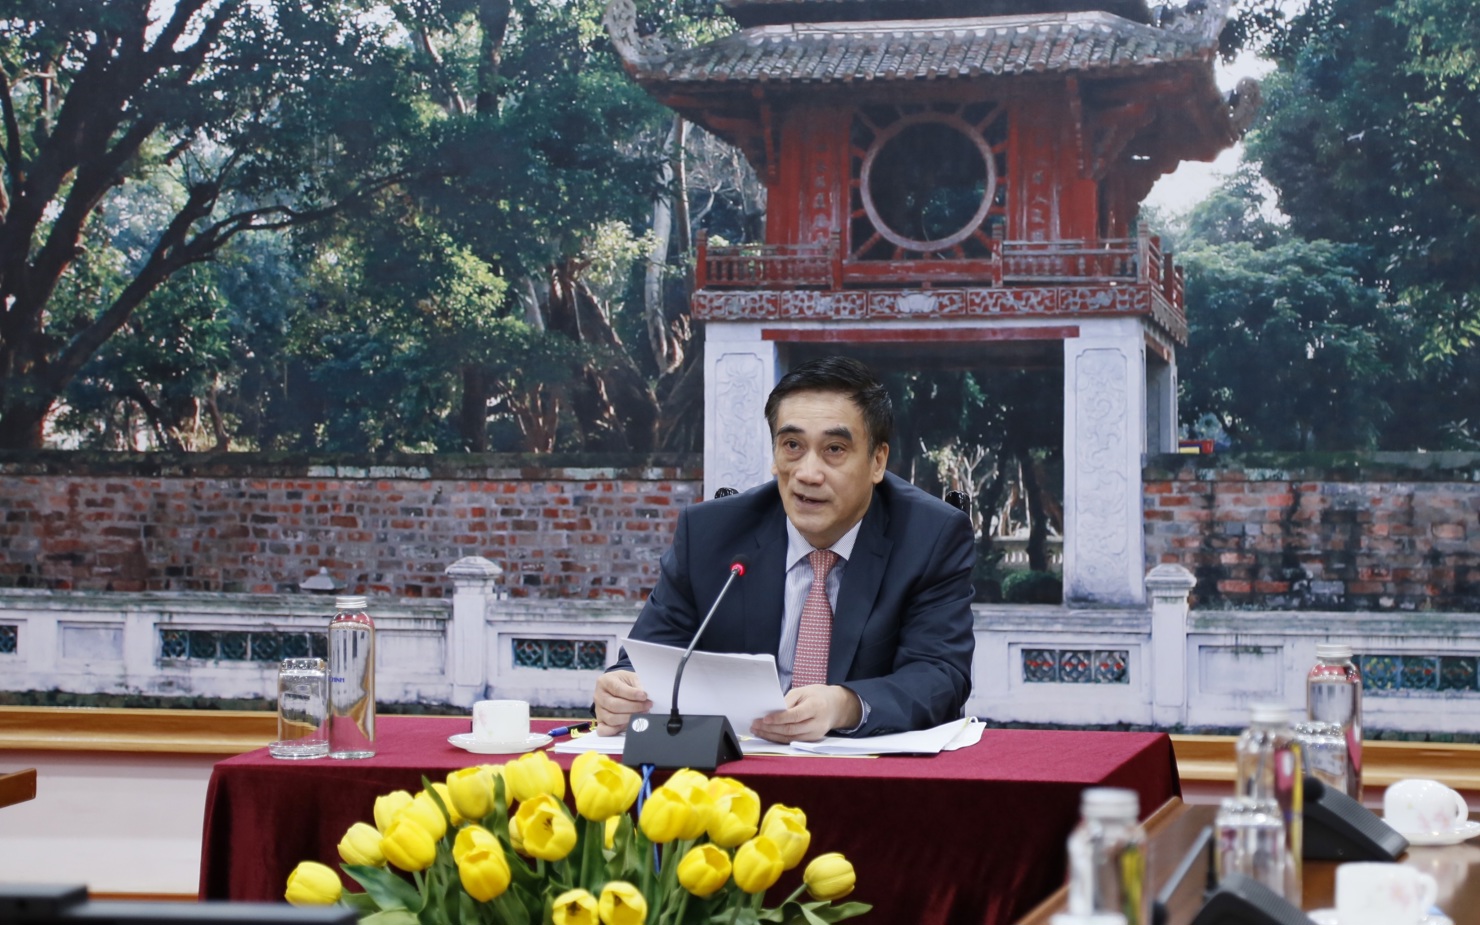 Thứ trưởng Bộ Tài chính Việt Nam Trần Xuân Hà phát biểu tại Hội nghị.